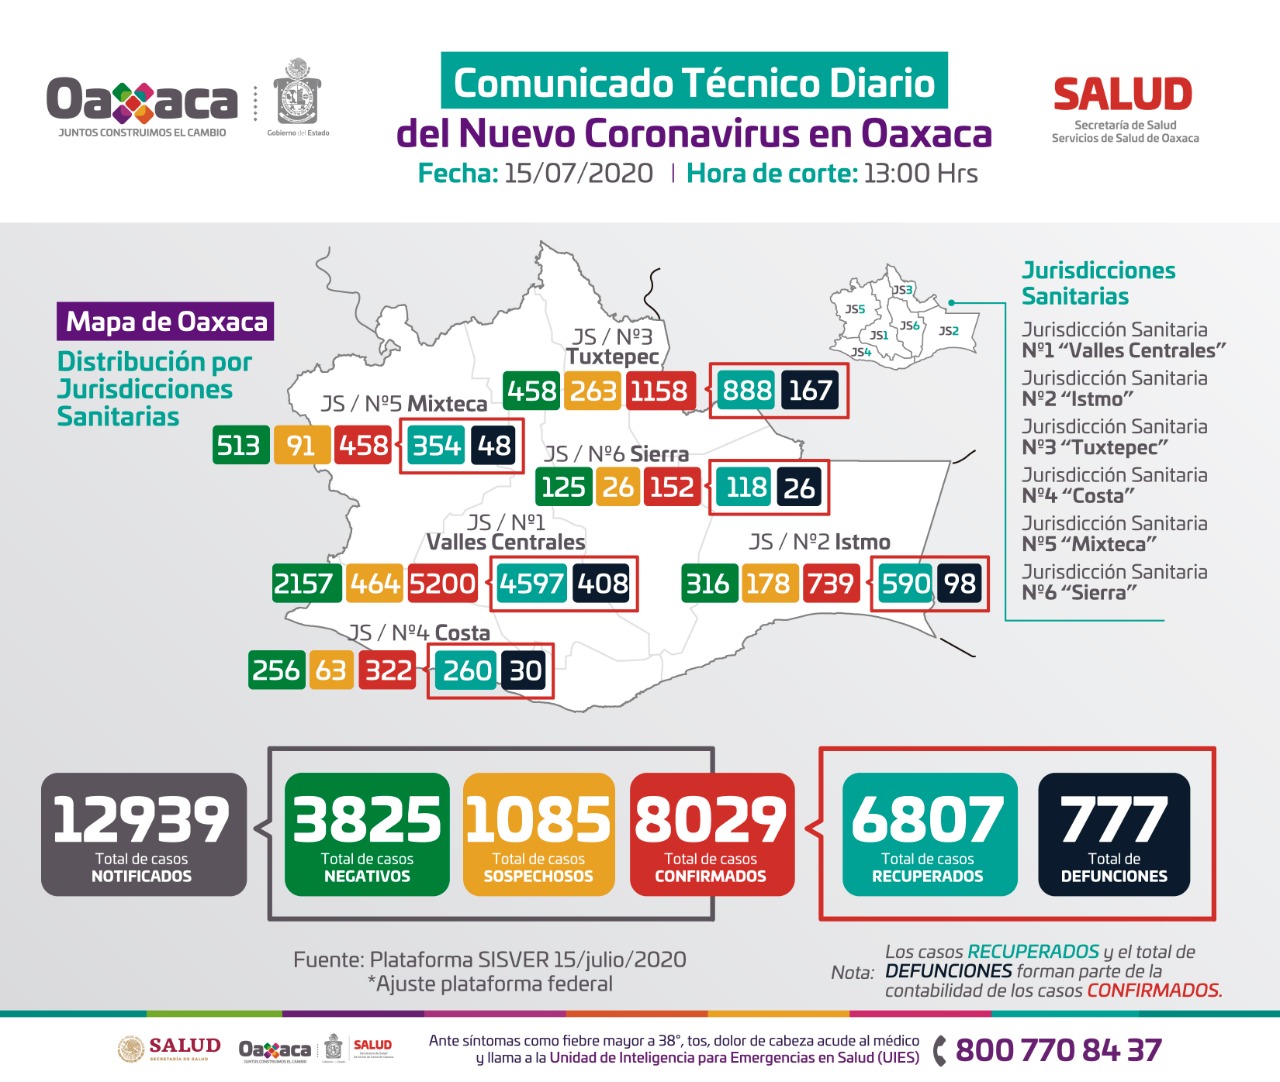 Registra Oaxaca ocho mil 029 casos acumulados y 777 defunciones de Covid-19